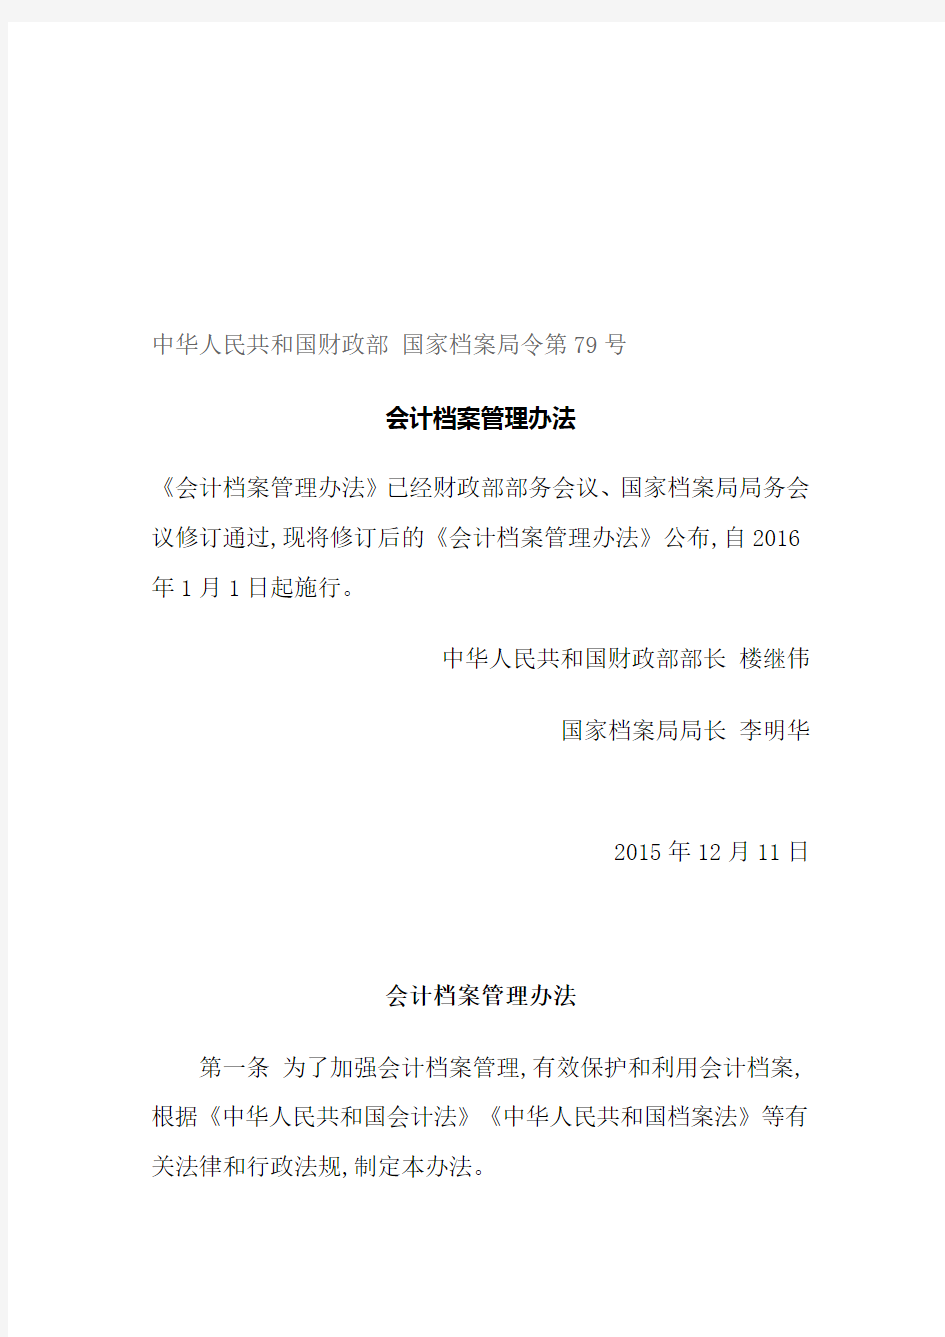 会计档案管理办法-中华人民共和国财政部-国家档案局令第79号.